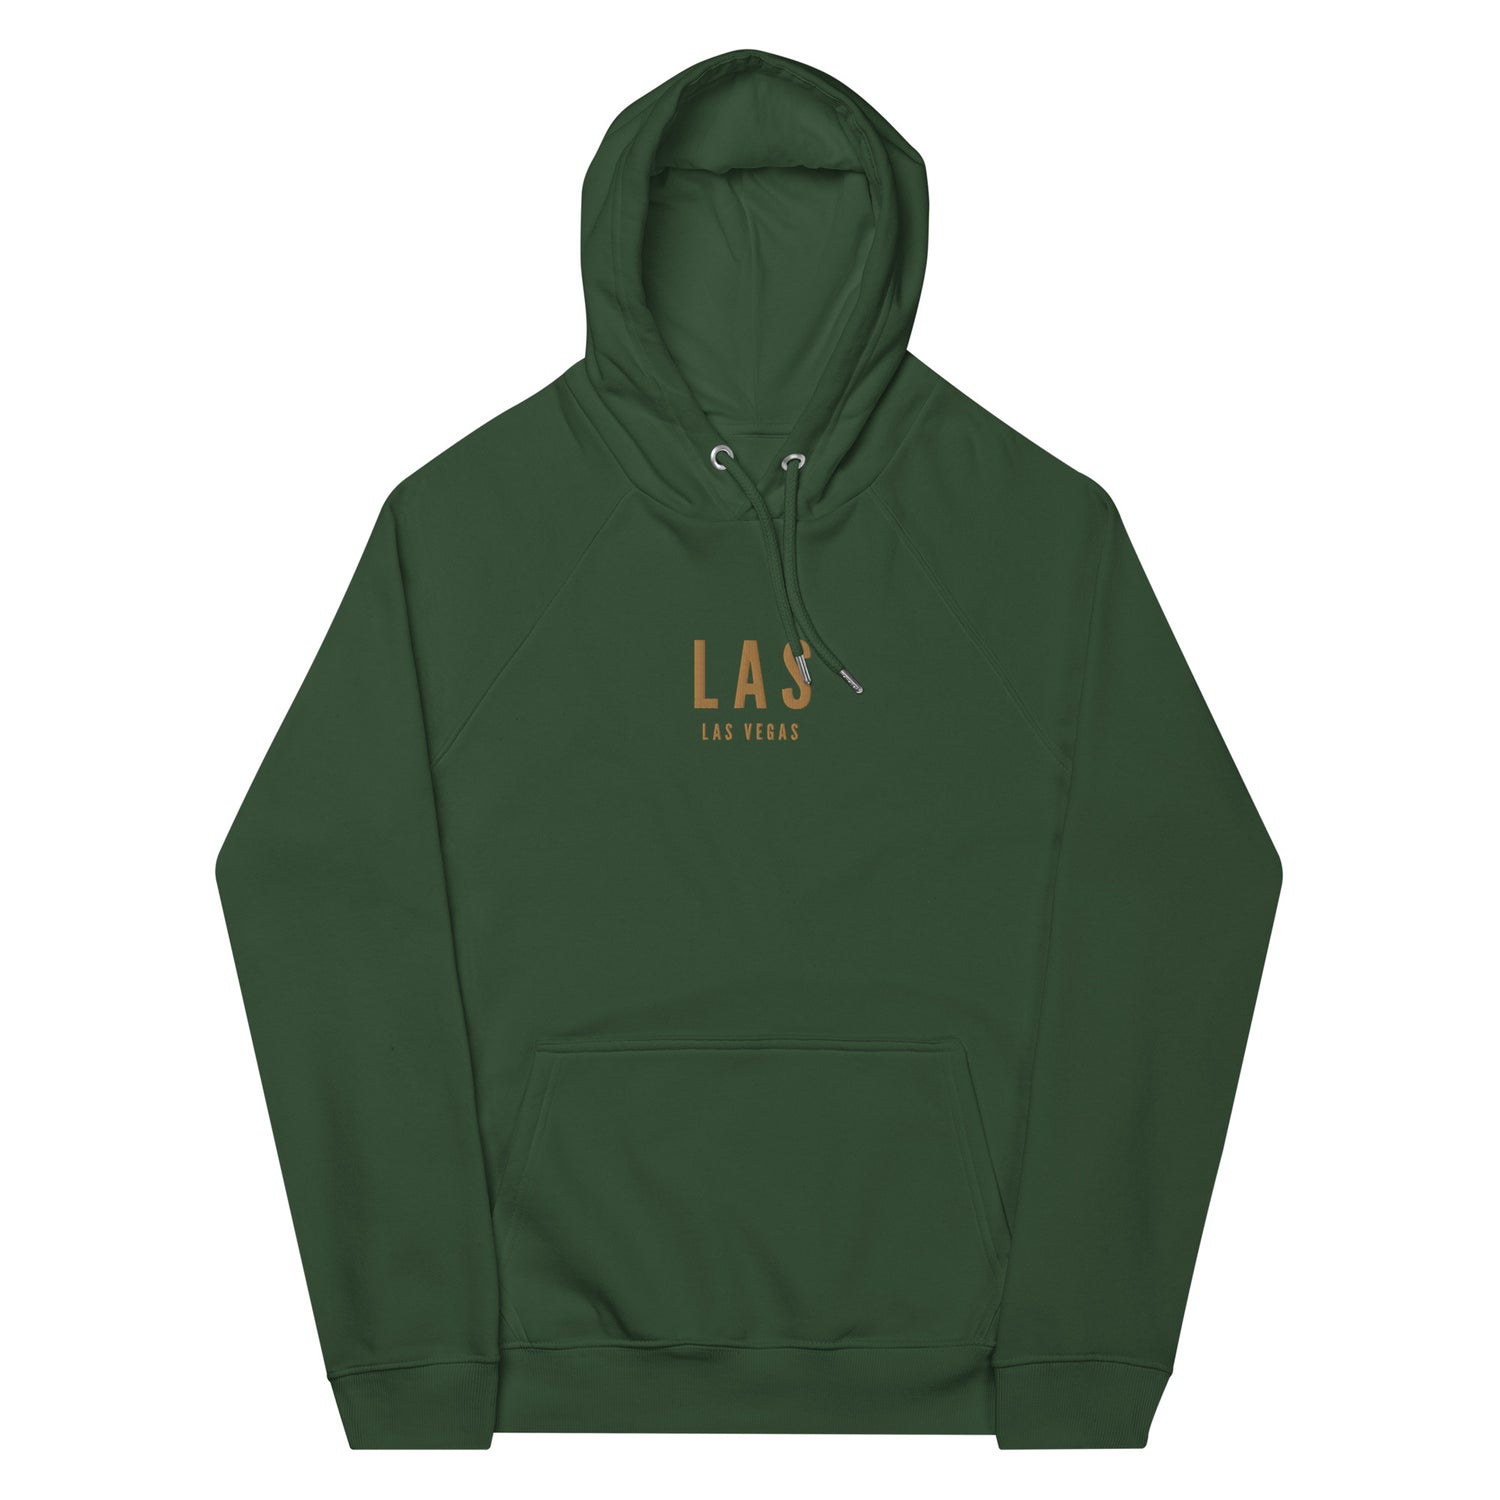 Las Vegas Nevada Hoodies and Sweatshirts • LAS Airport Code